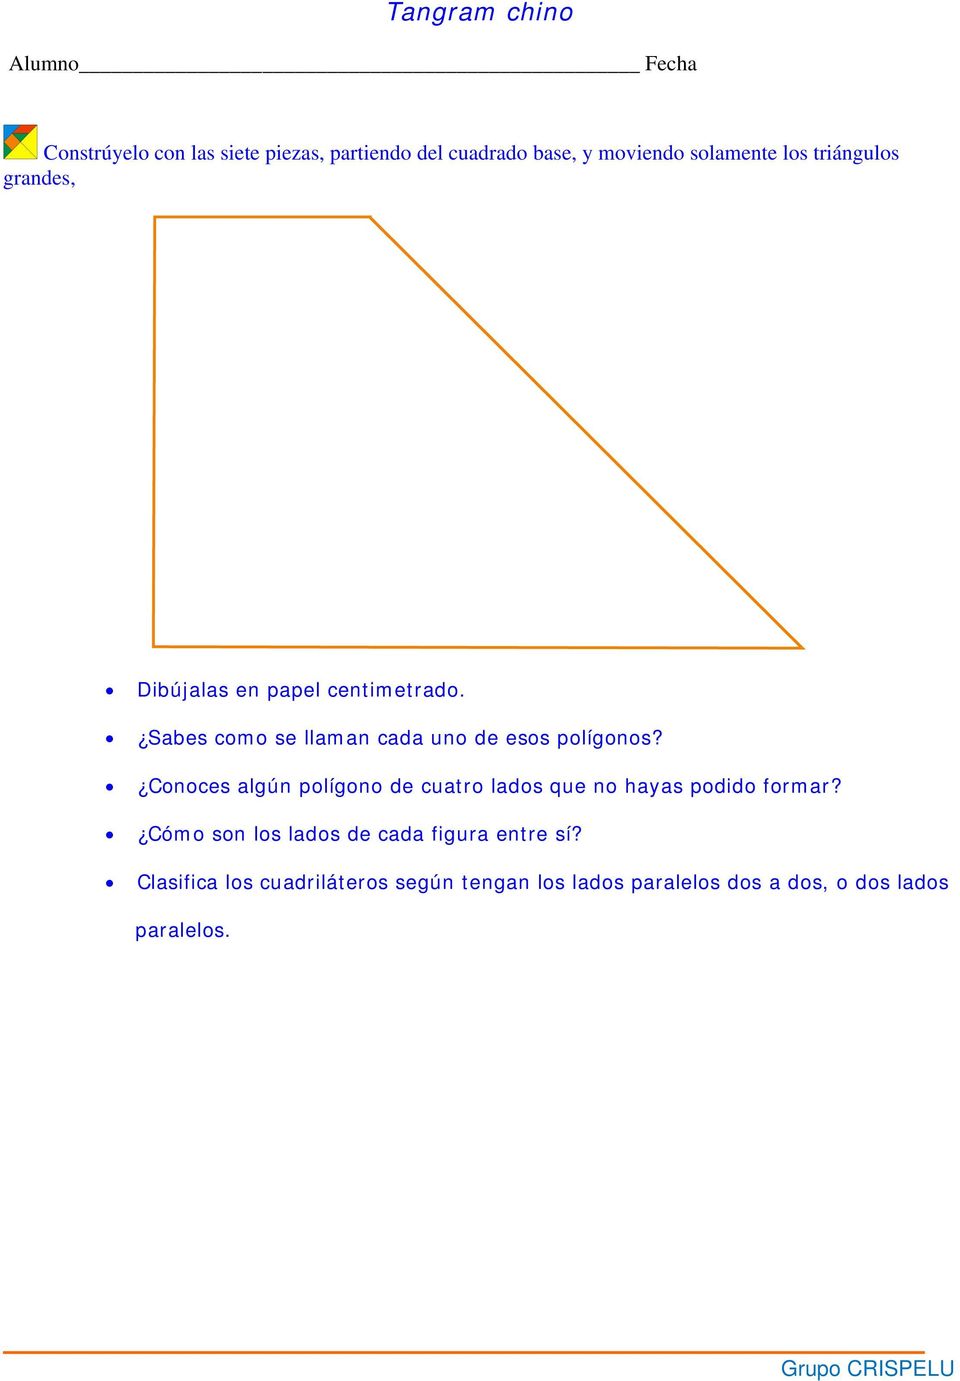 Conoces algún polígono de cuatro lados que no hayas podido formar?